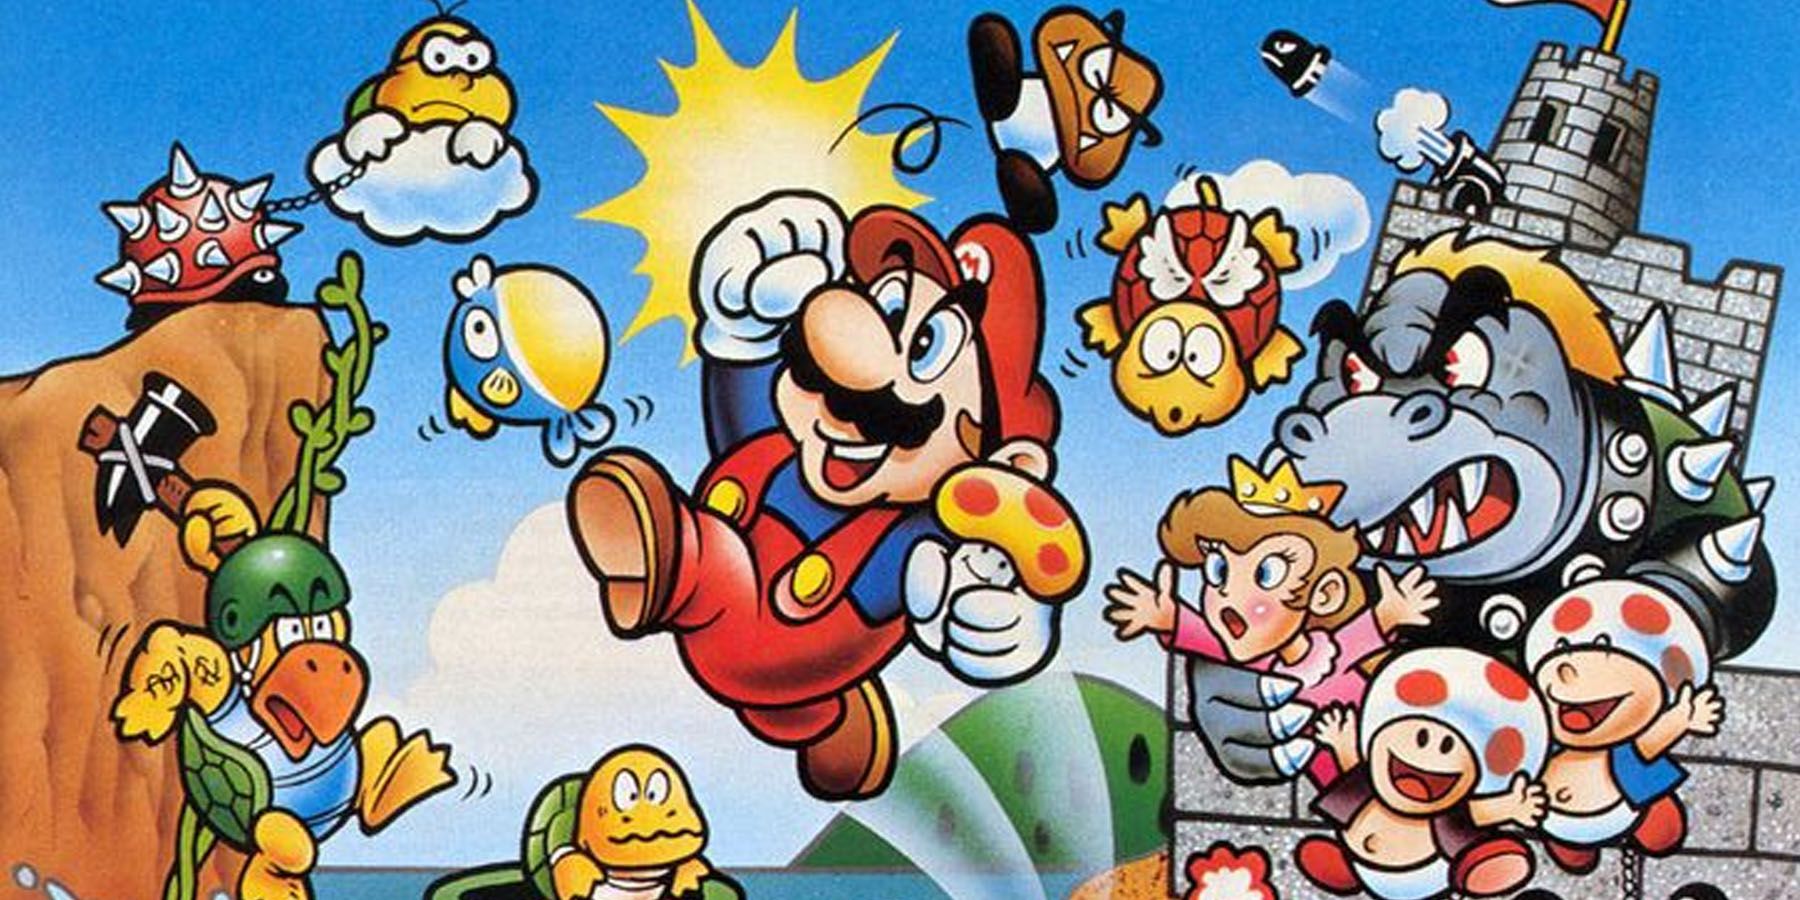 Super Mario Bros Original Box art